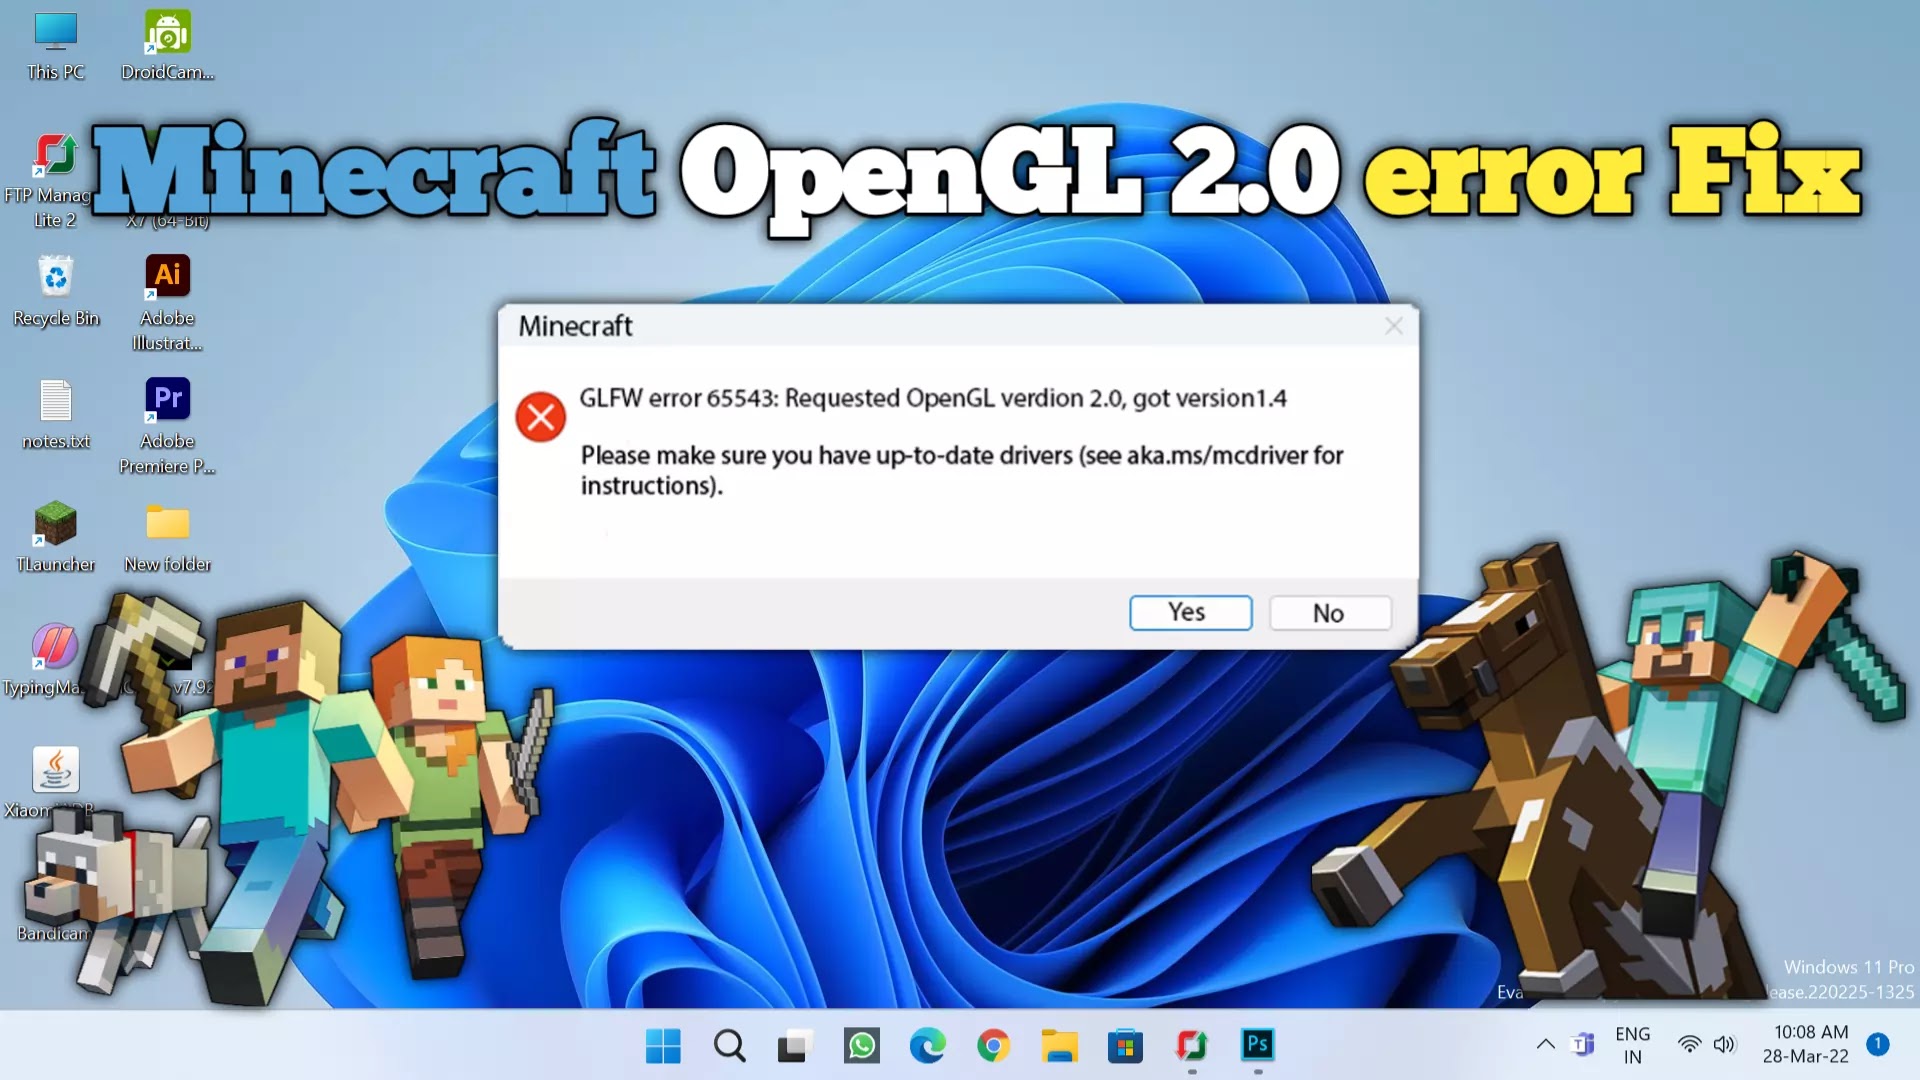 Minecraft Opengl 2.0 error fix by Tech MatriX